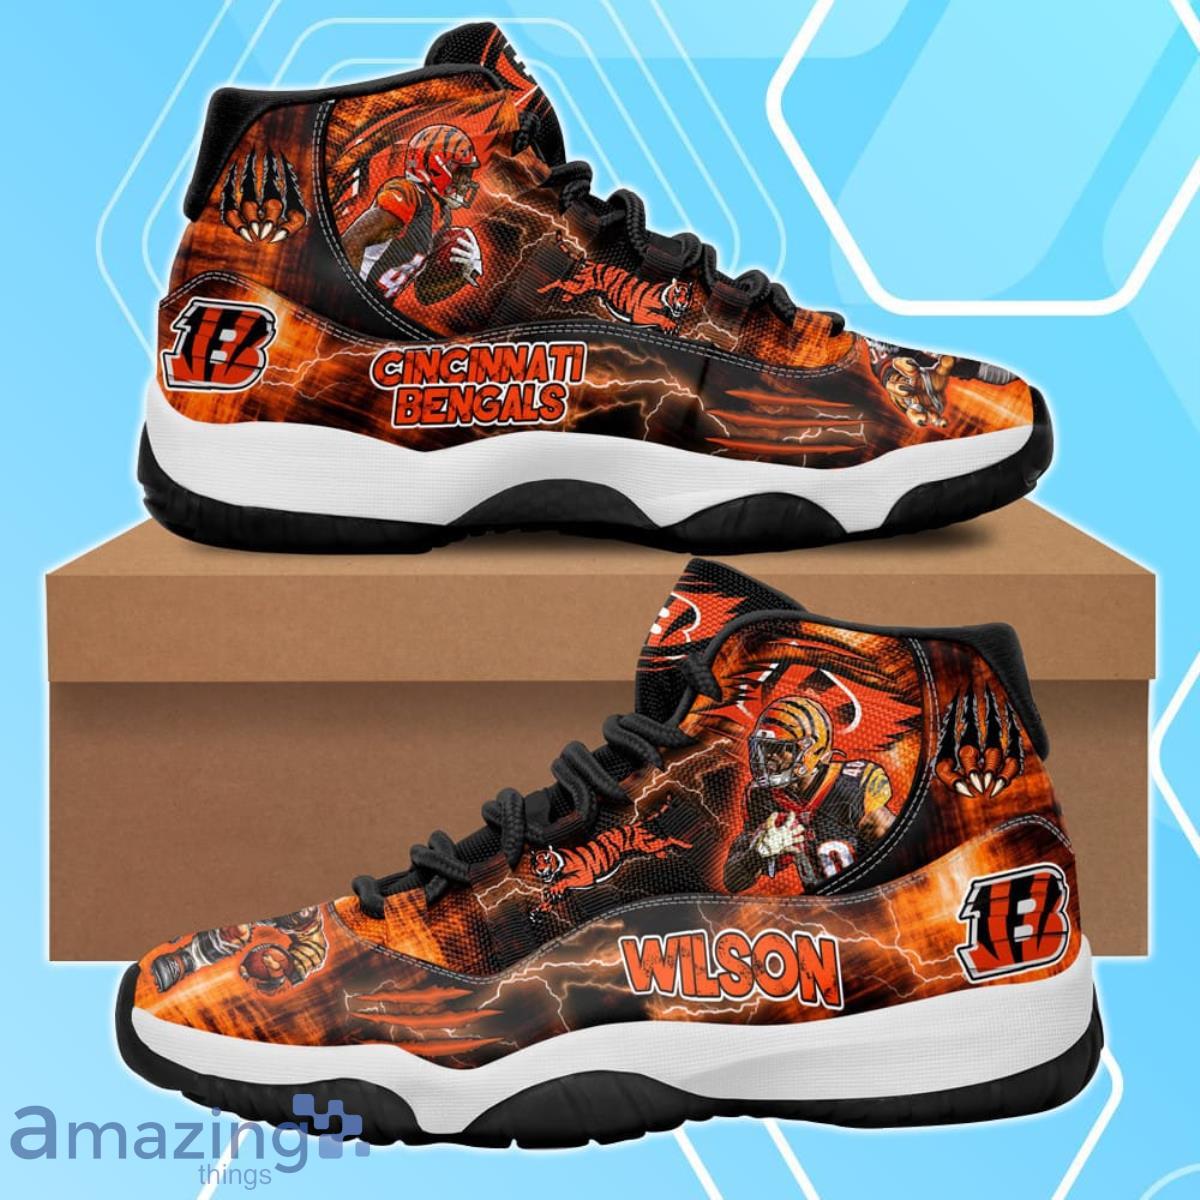 Cincinnati Bengals Brandon Wilson Air Jordan 11 Shoes For Men Women Product Photo 1